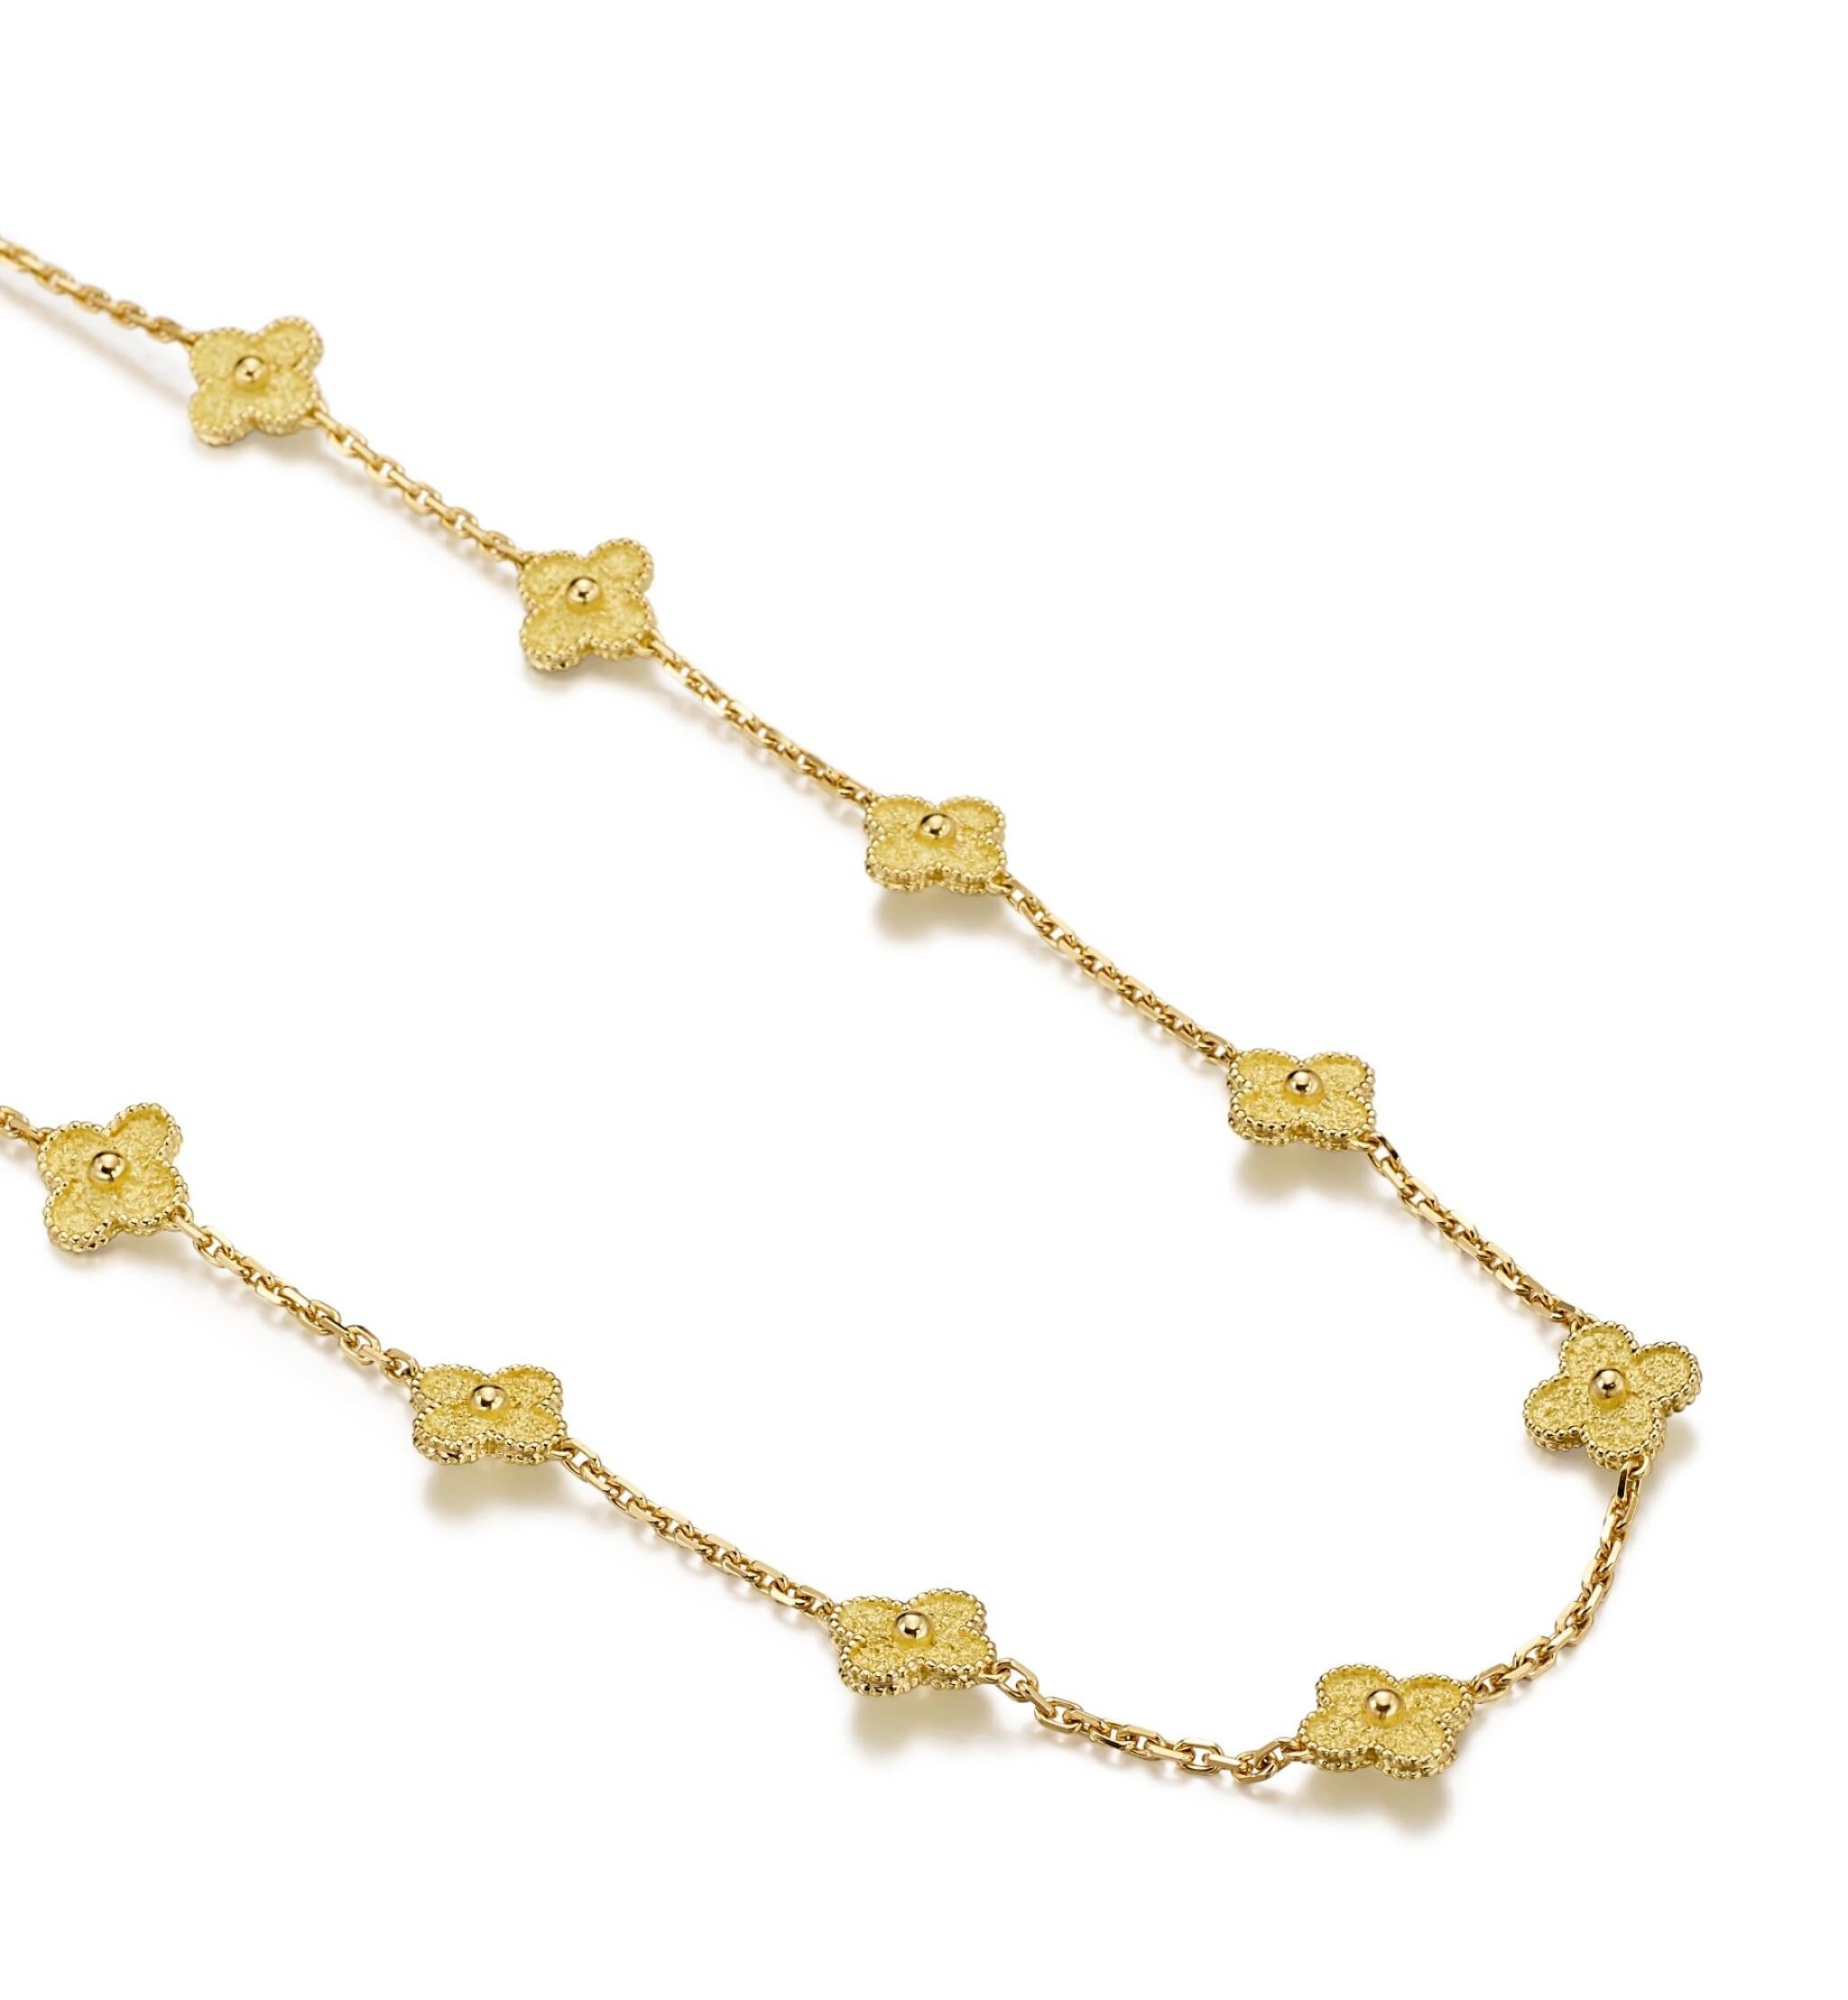 Die Alhambra-Kollektion von Van Cleef & Arpels ist eine der begehrtesten Juwelenkollektionen der Welt. Jedes Stück der Collection'S verkörpert den Geist der Zeitlosigkeit und des Glücks.

Verziert mit zwanzig Kleemotiven aus gehämmertem Gold an